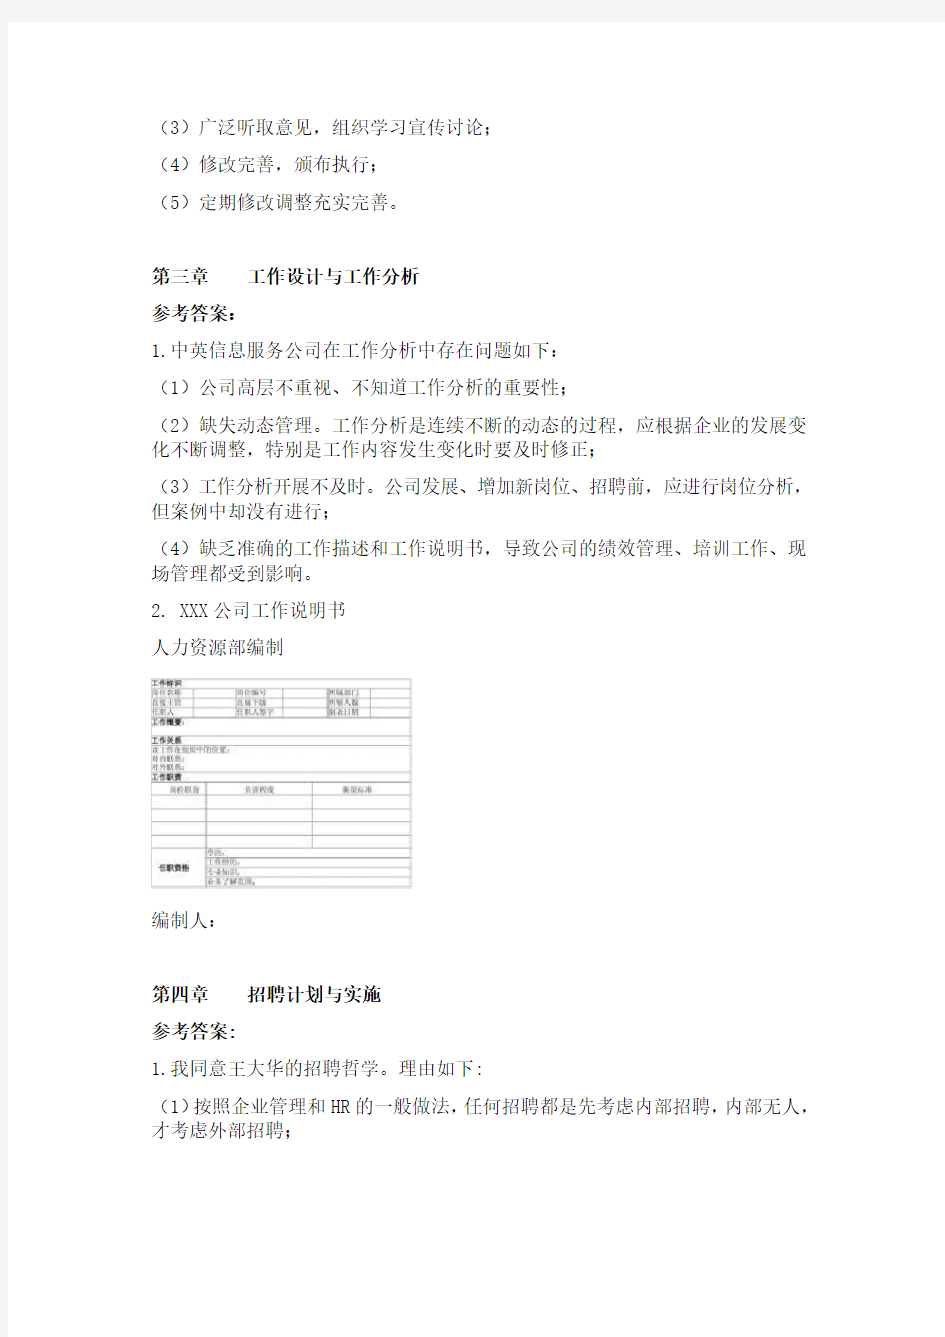 上海人力资源三级书上分析题 (1)